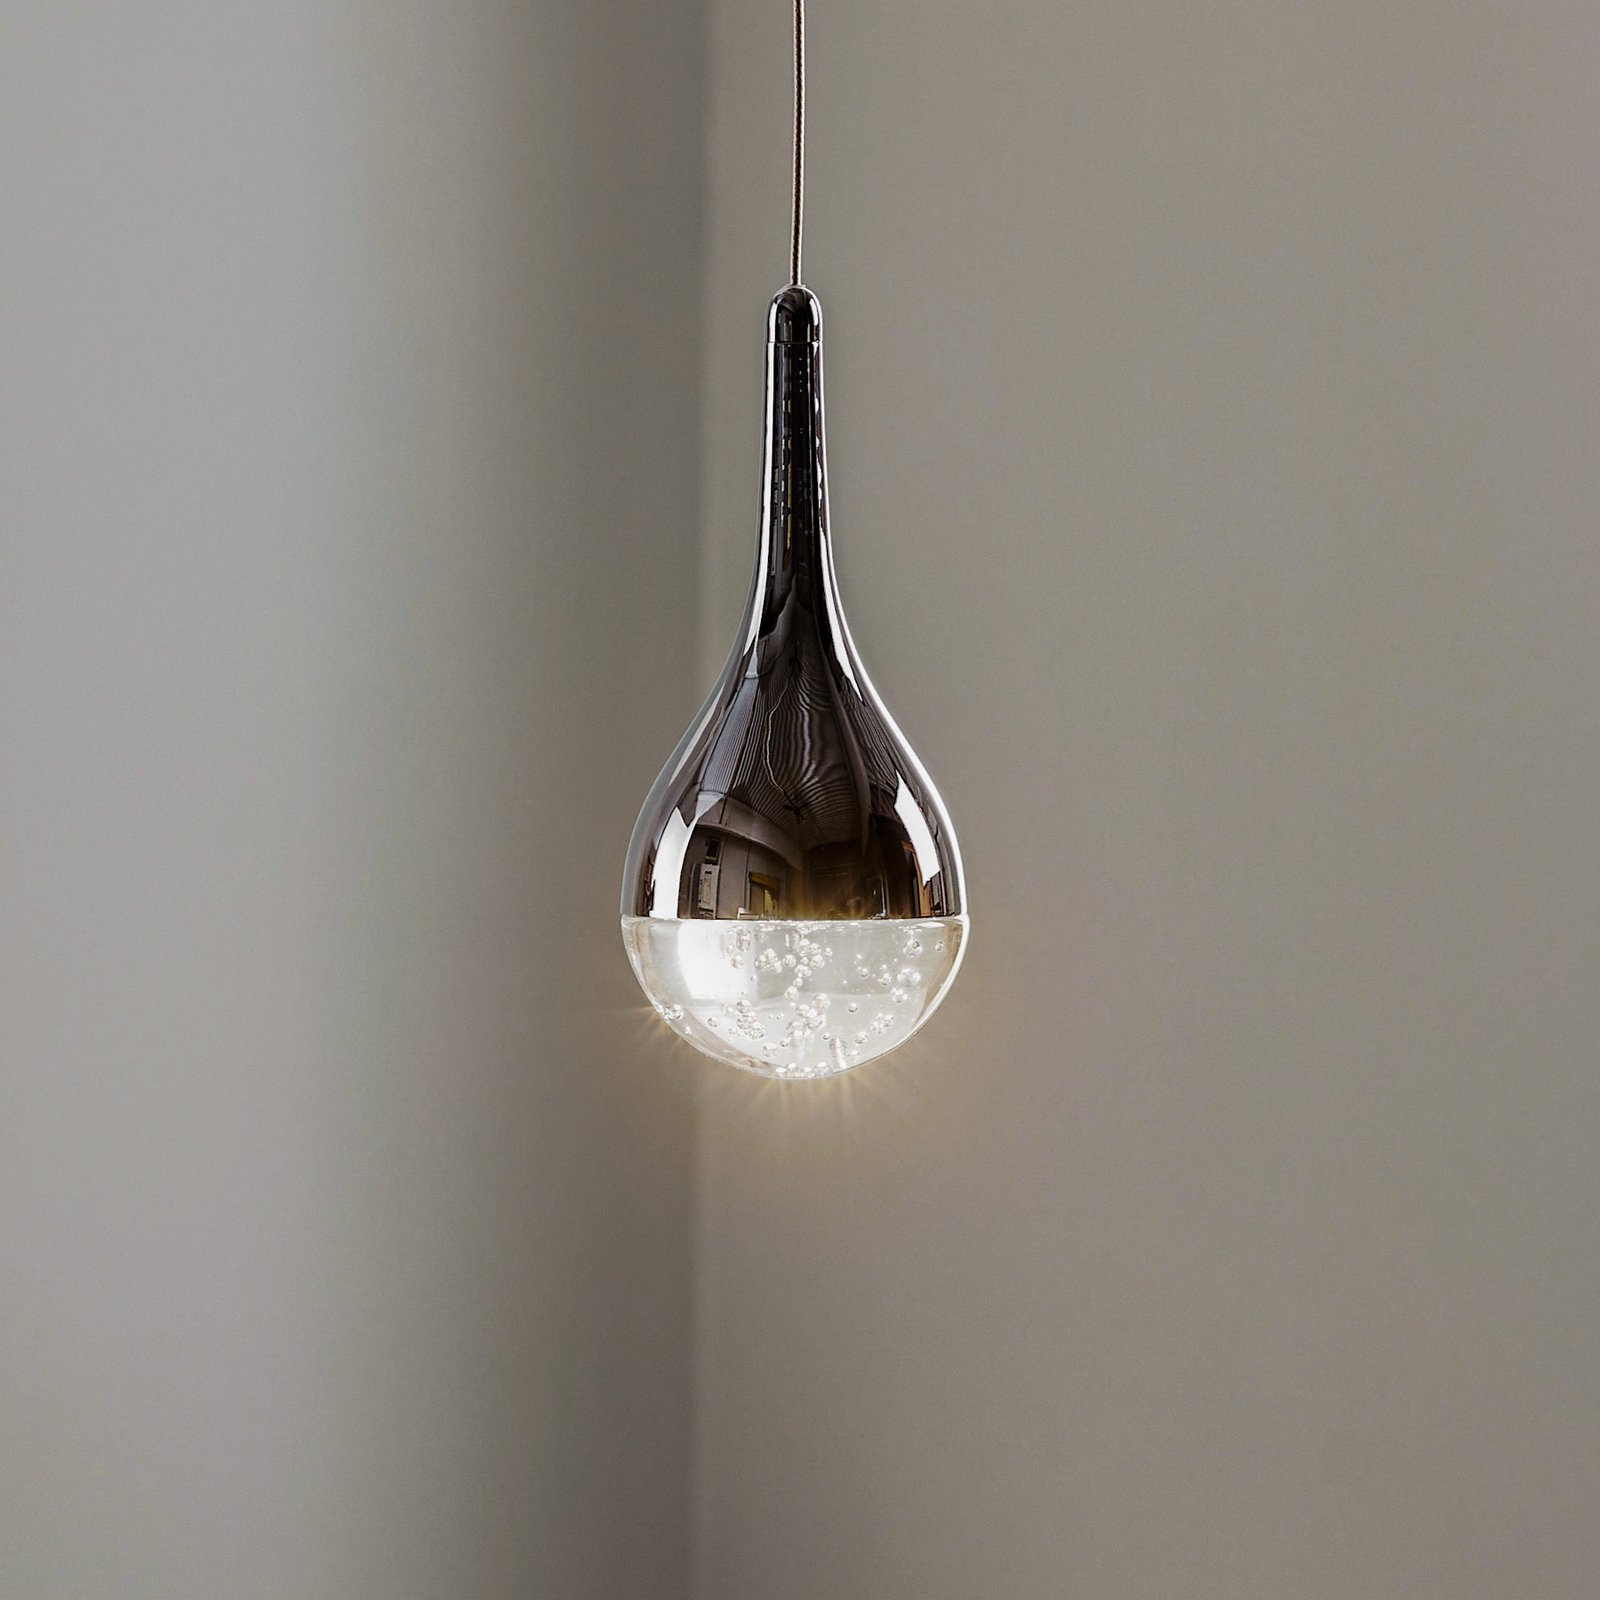 Elie LED hanging light, one-bulb